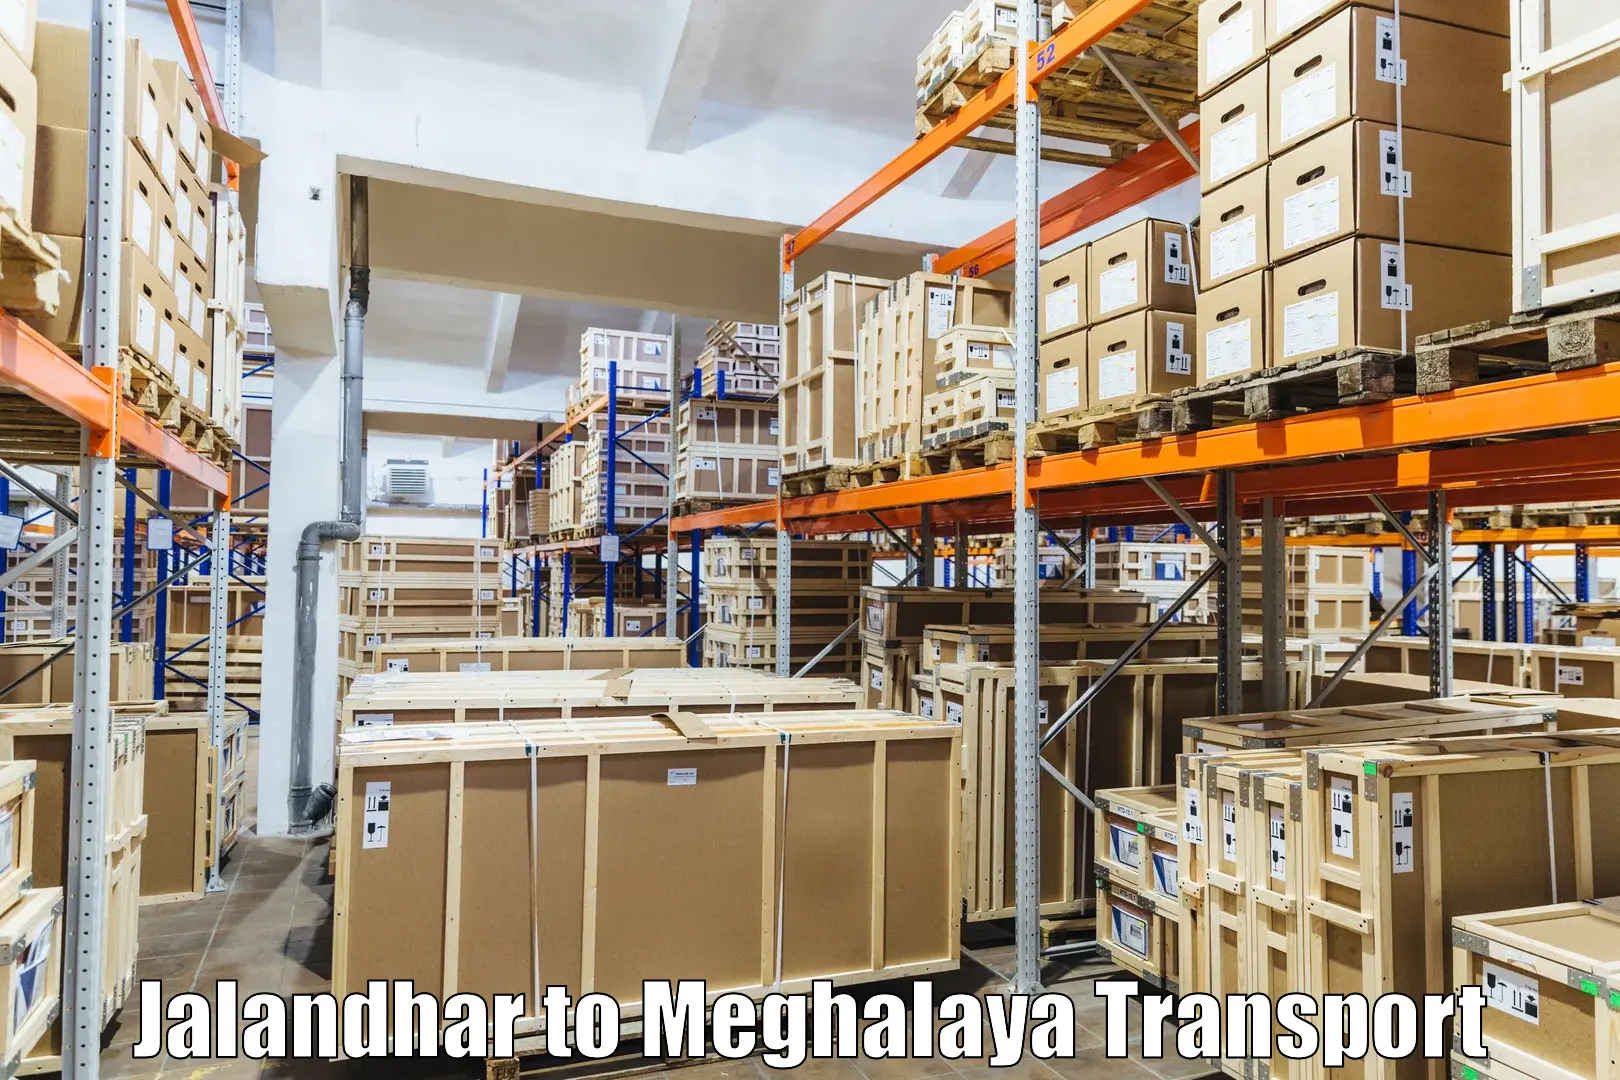 Online transport booking Jalandhar to Cherrapunji